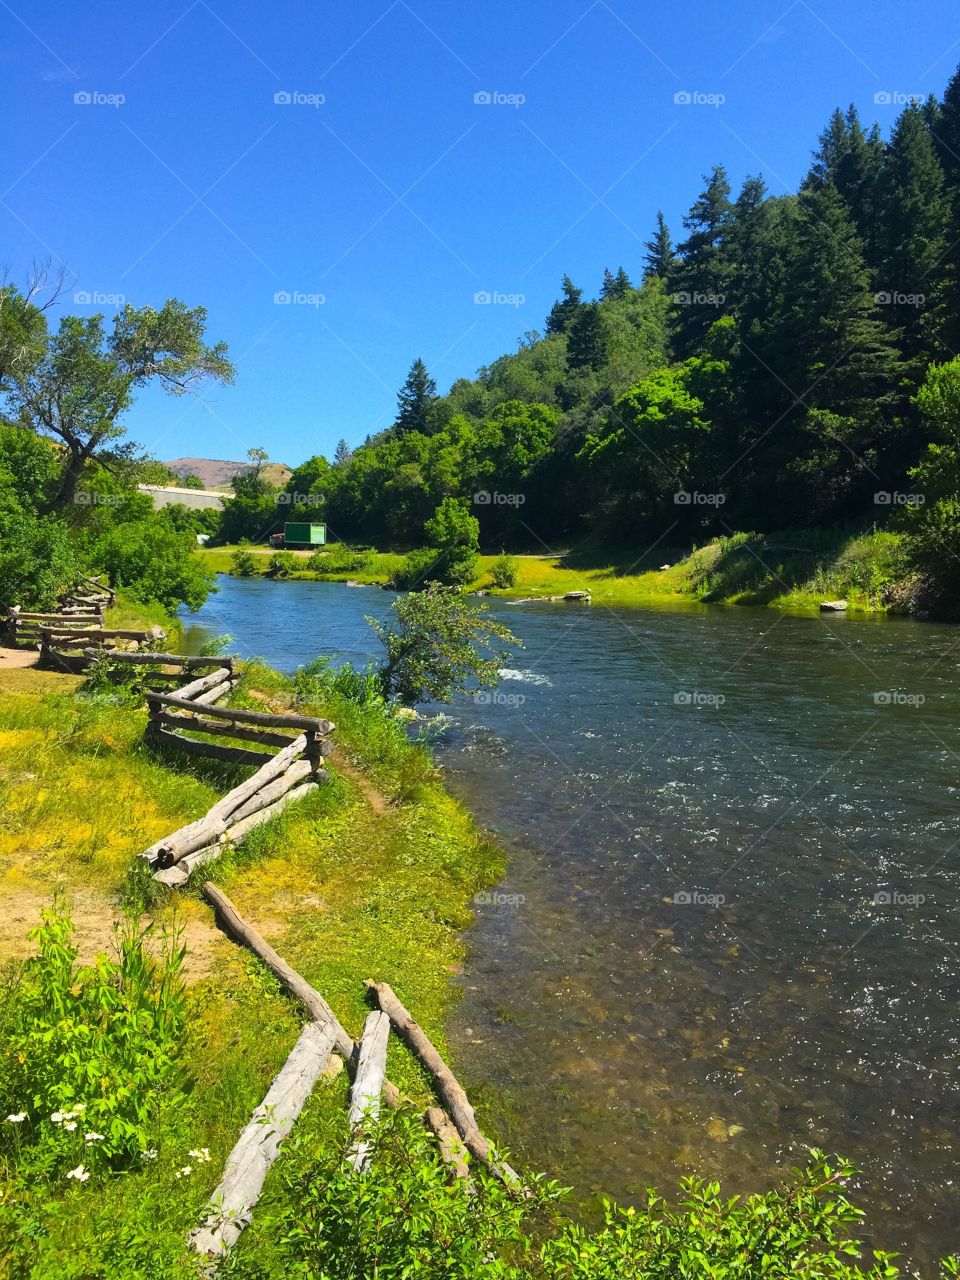 River in Utah 